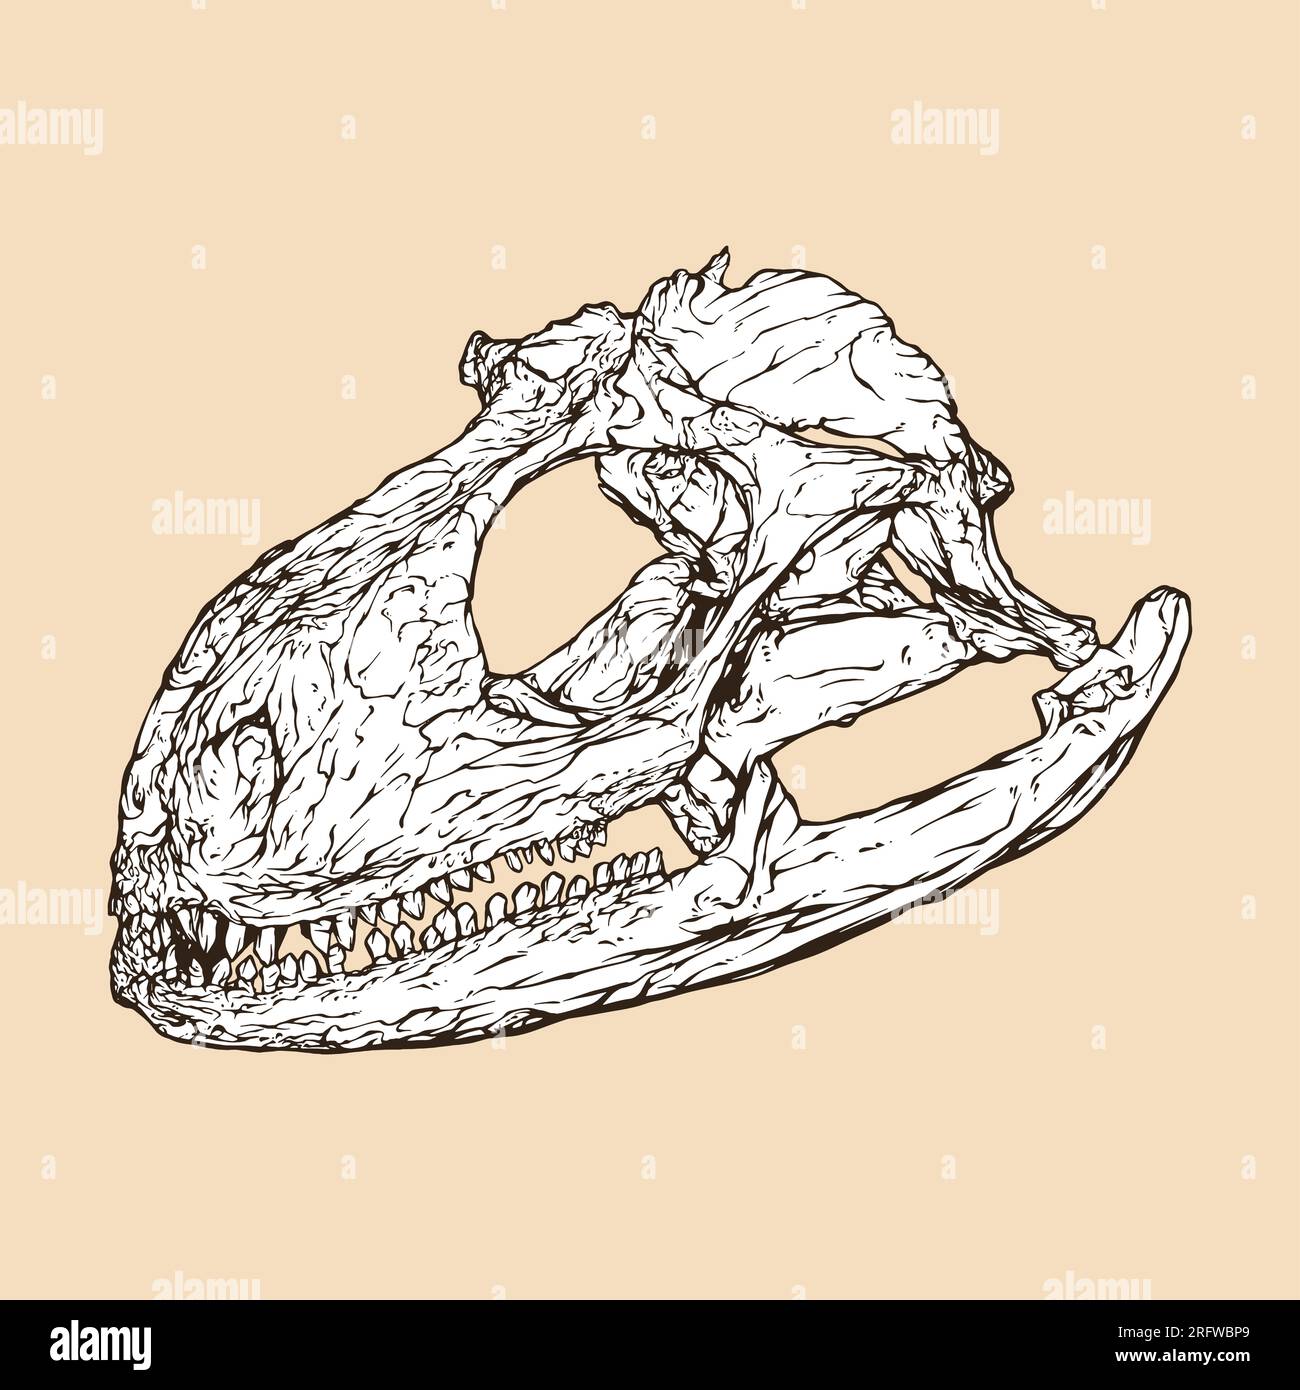 iguana skull head vector illustration Stock Vector